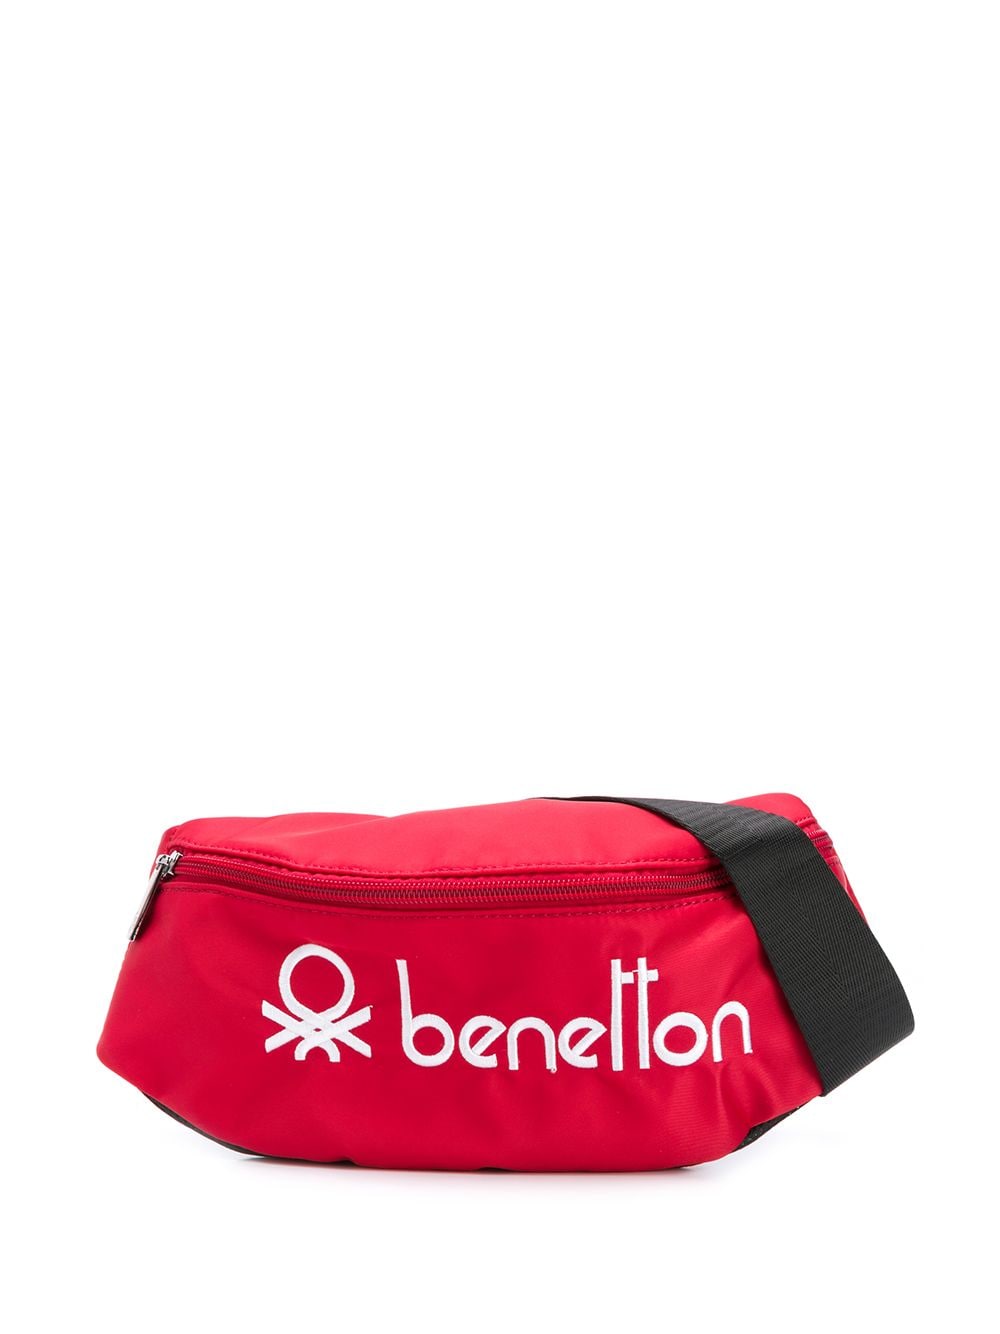 фото Benetton поясная сумка с вышитым логотипом